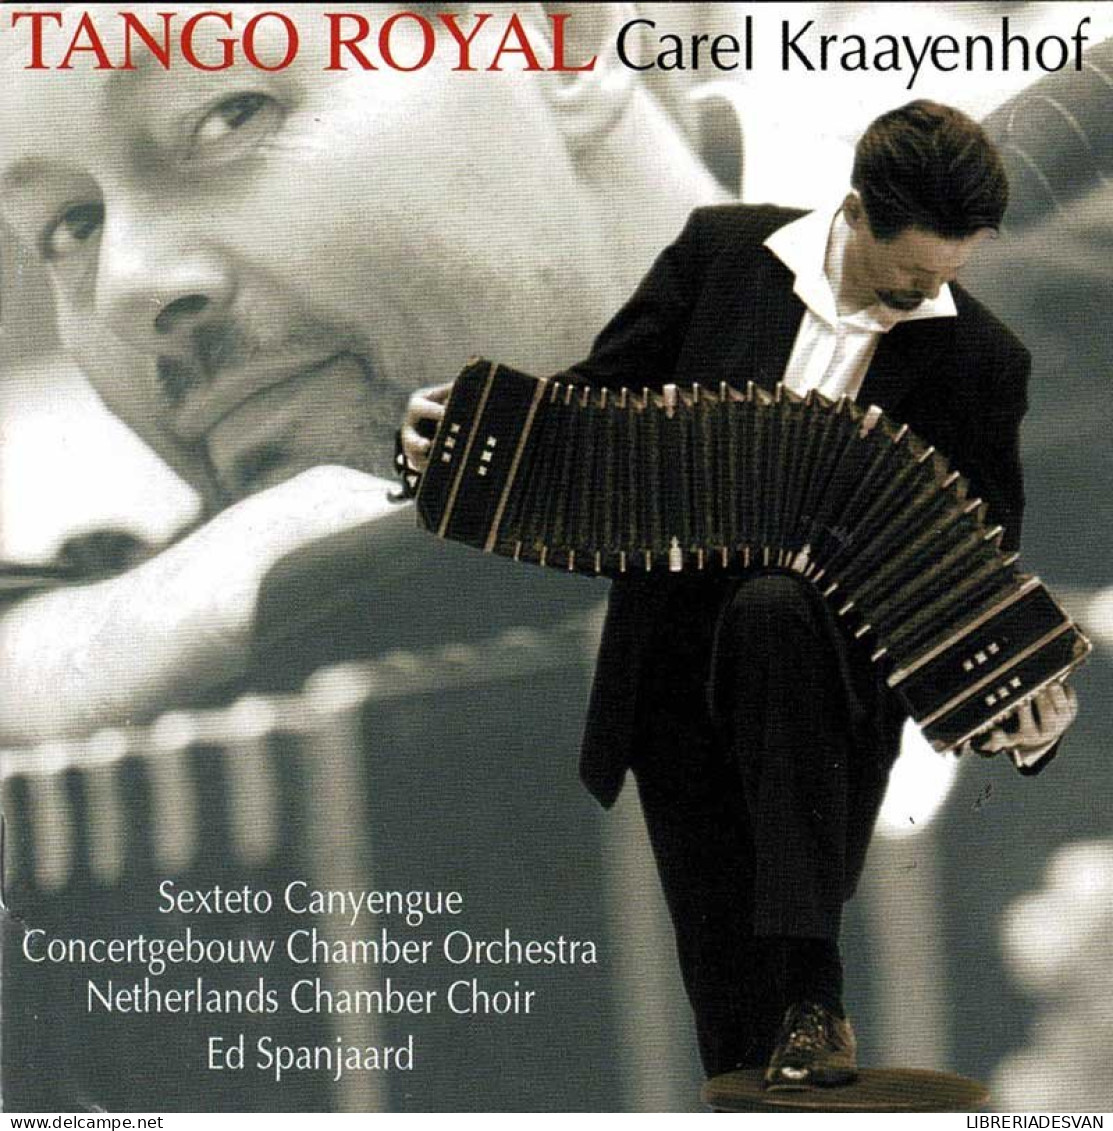 Carel Kraayenhof - Tango Royal. CD - Country & Folk